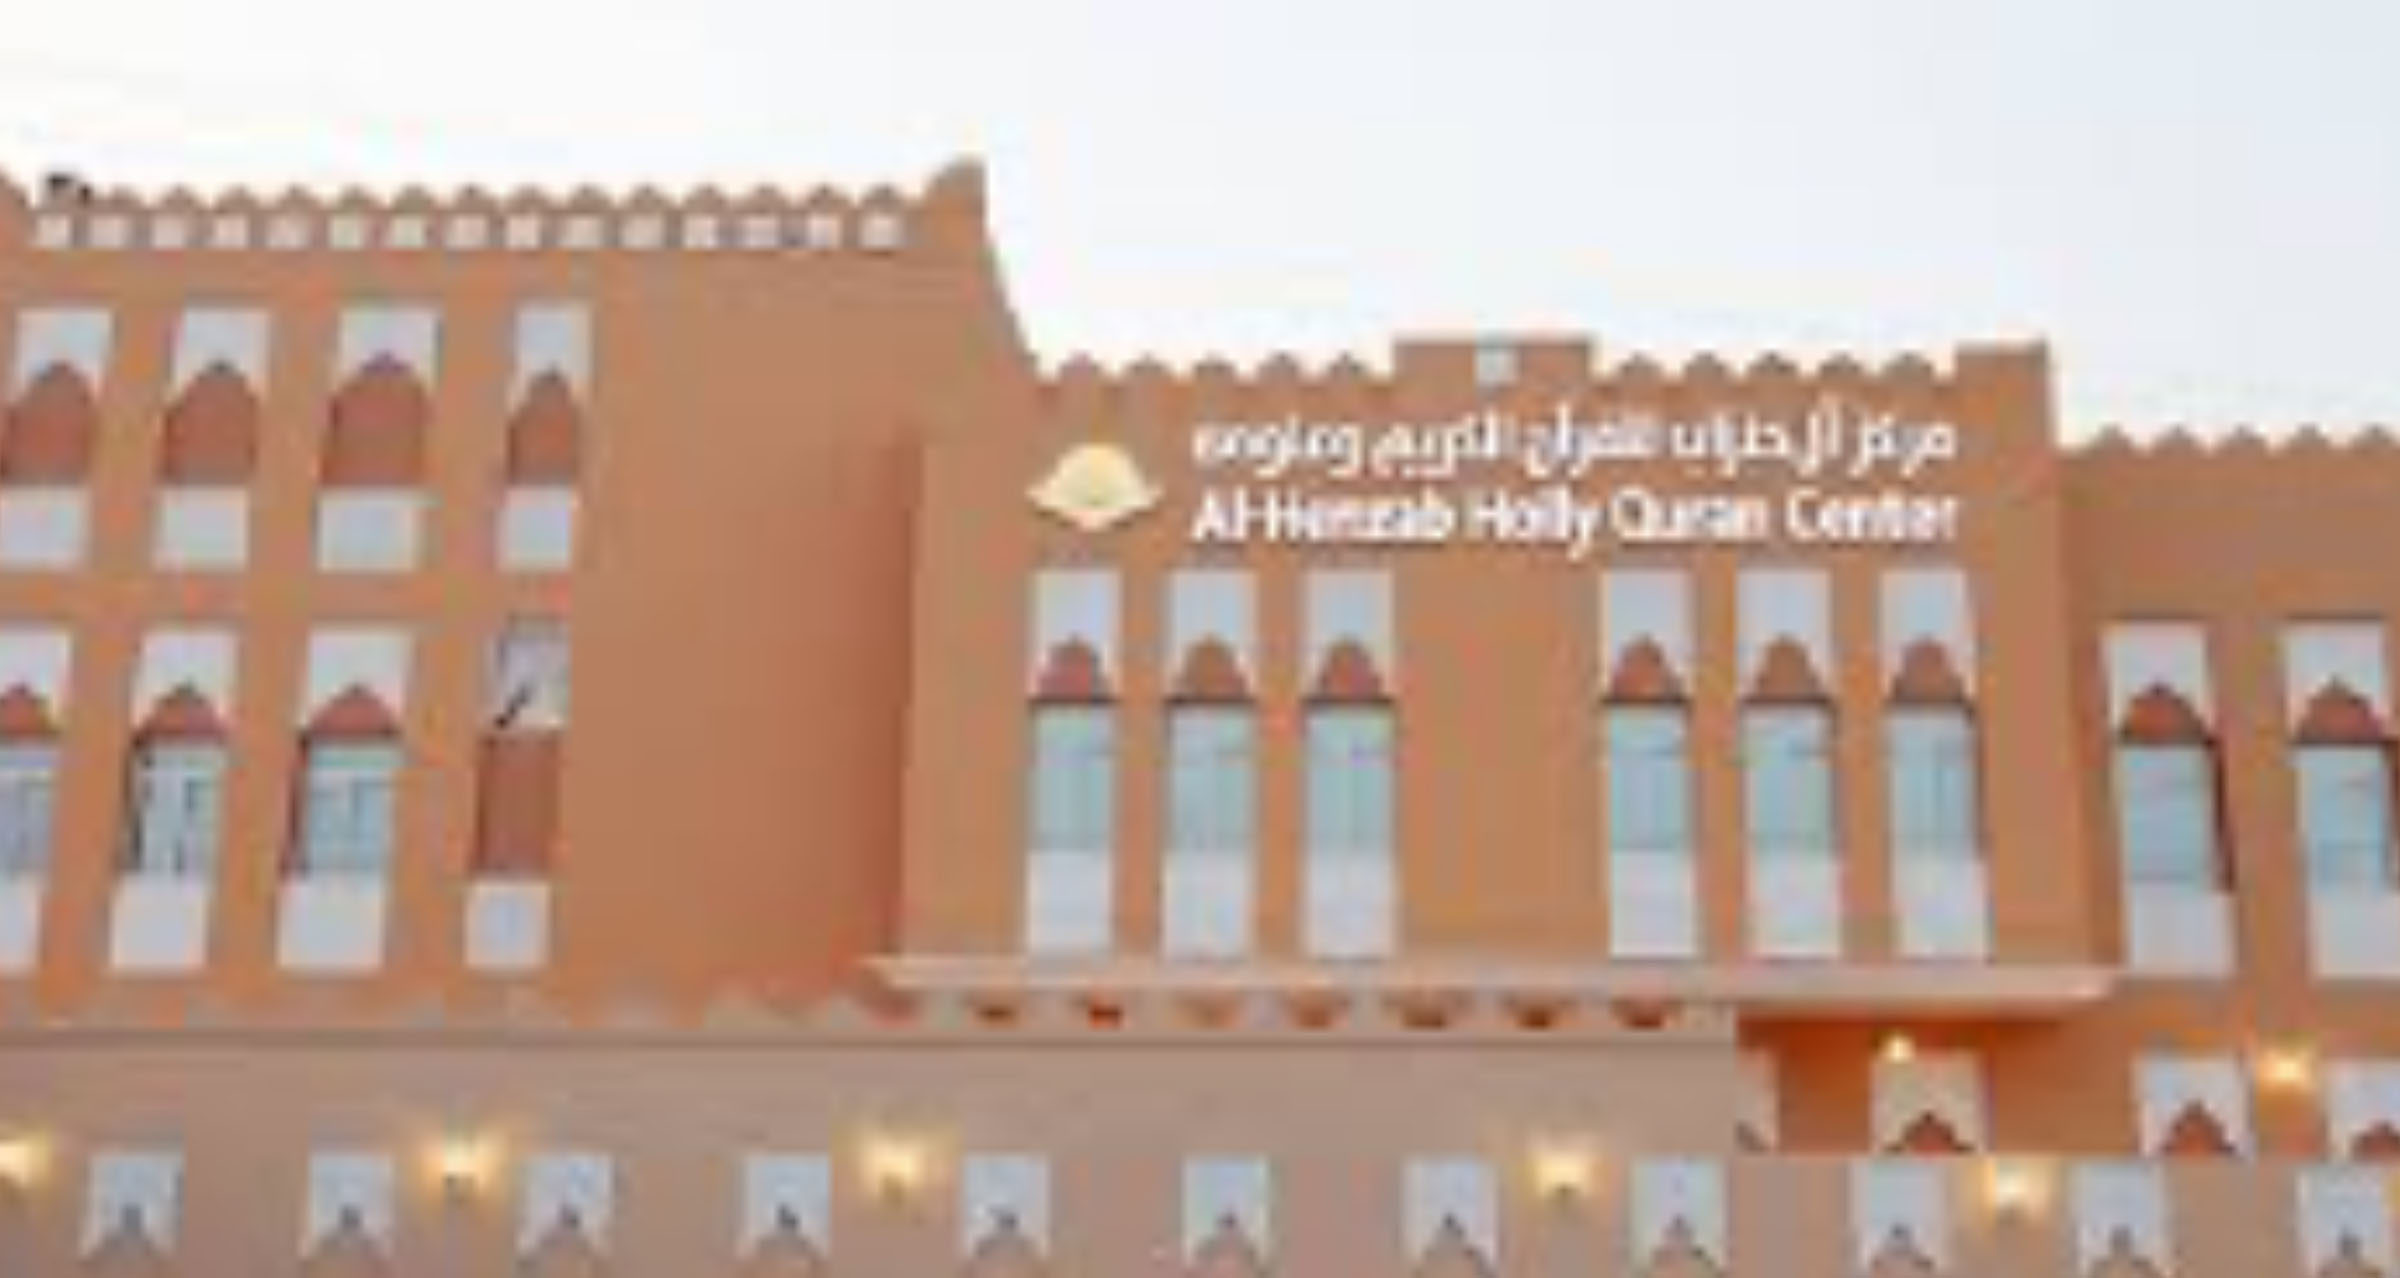 بداية العمل للعام الدراسي 2020/2021 في مركز آل حنزاب للقرآن الكريم وعلومه